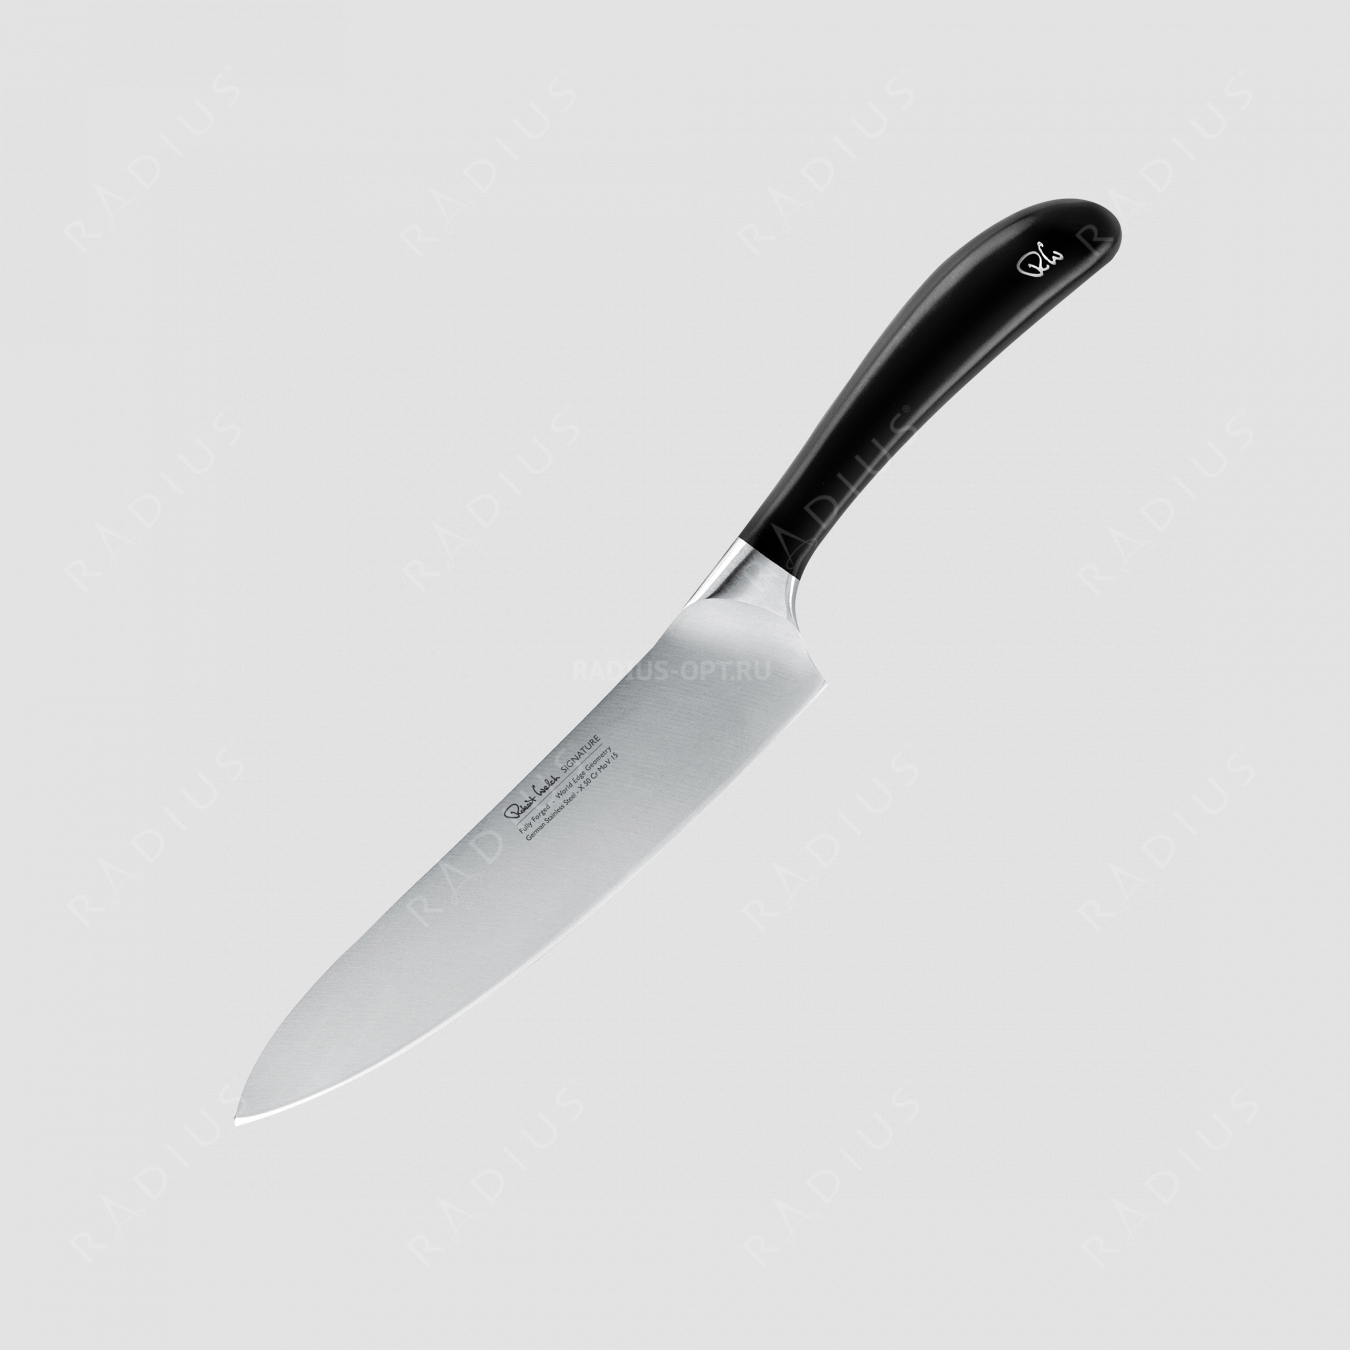 Профессиональный поварской кухонный нож 18 см, серия Signature, ROBERT WELCH, Великобритания